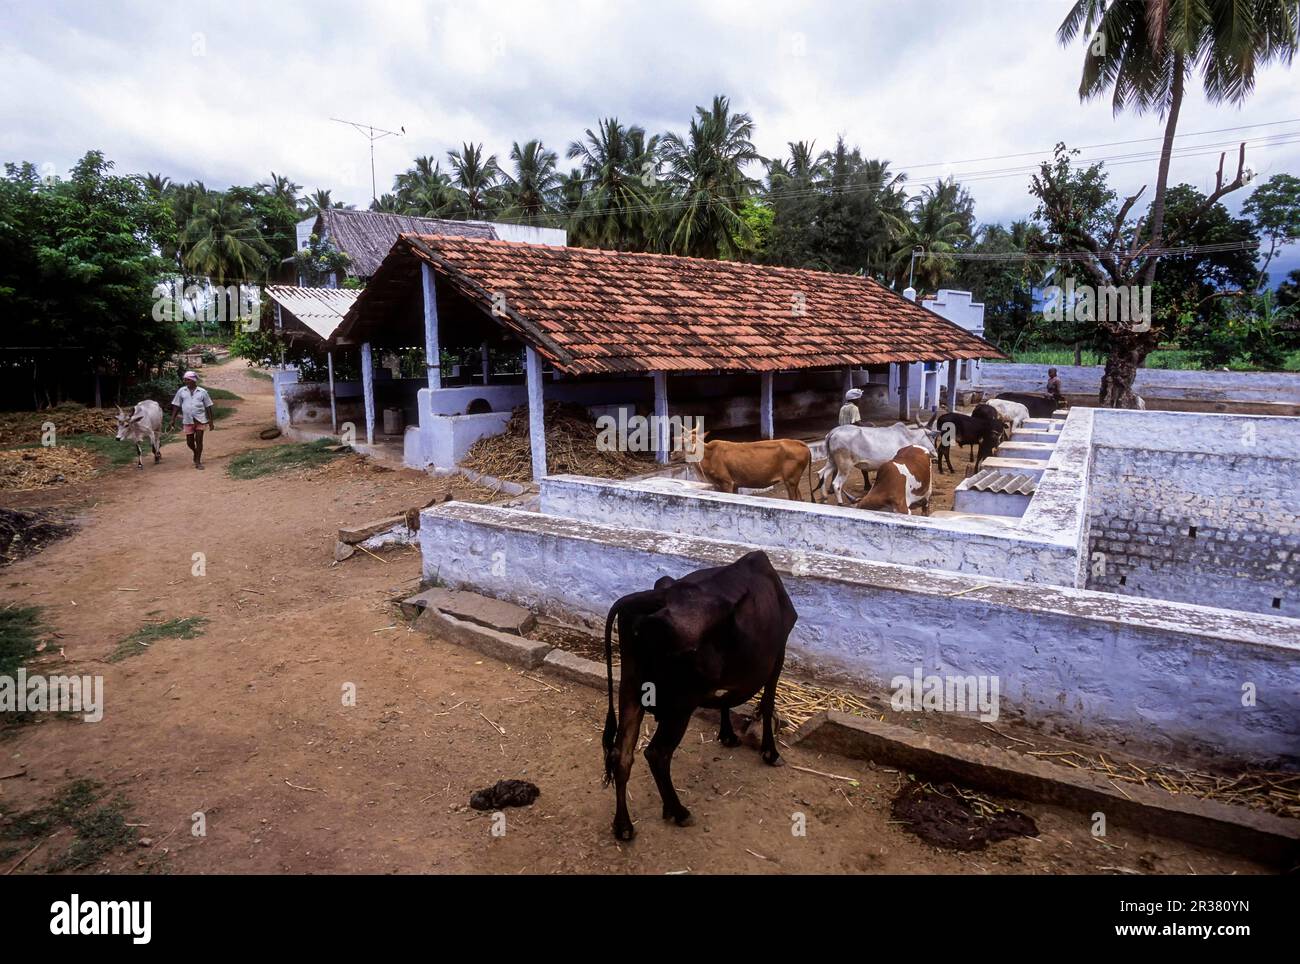 Bovins dans une ferme biologique, une vache est un must pour une agriculture biologique, l'Inde. Race indienne de Kangayam Kangeyam Banque D'Images